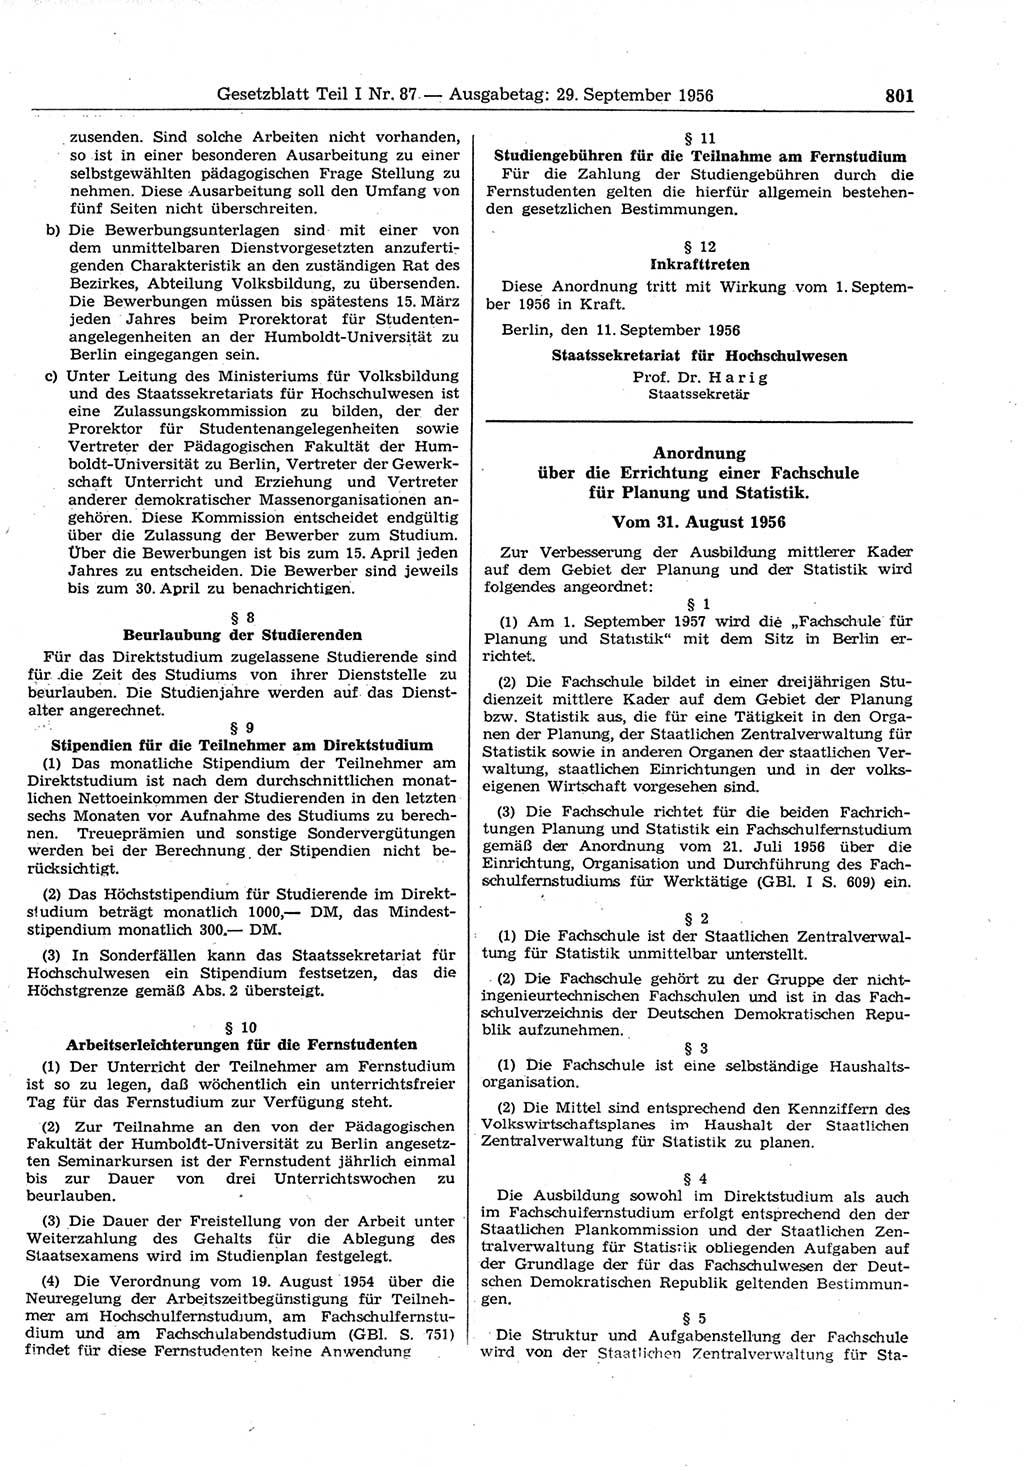 Gesetzblatt (GBl.) der Deutschen Demokratischen Republik (DDR) Teil Ⅰ 1956, Seite 801 (GBl. DDR Ⅰ 1956, S. 801)